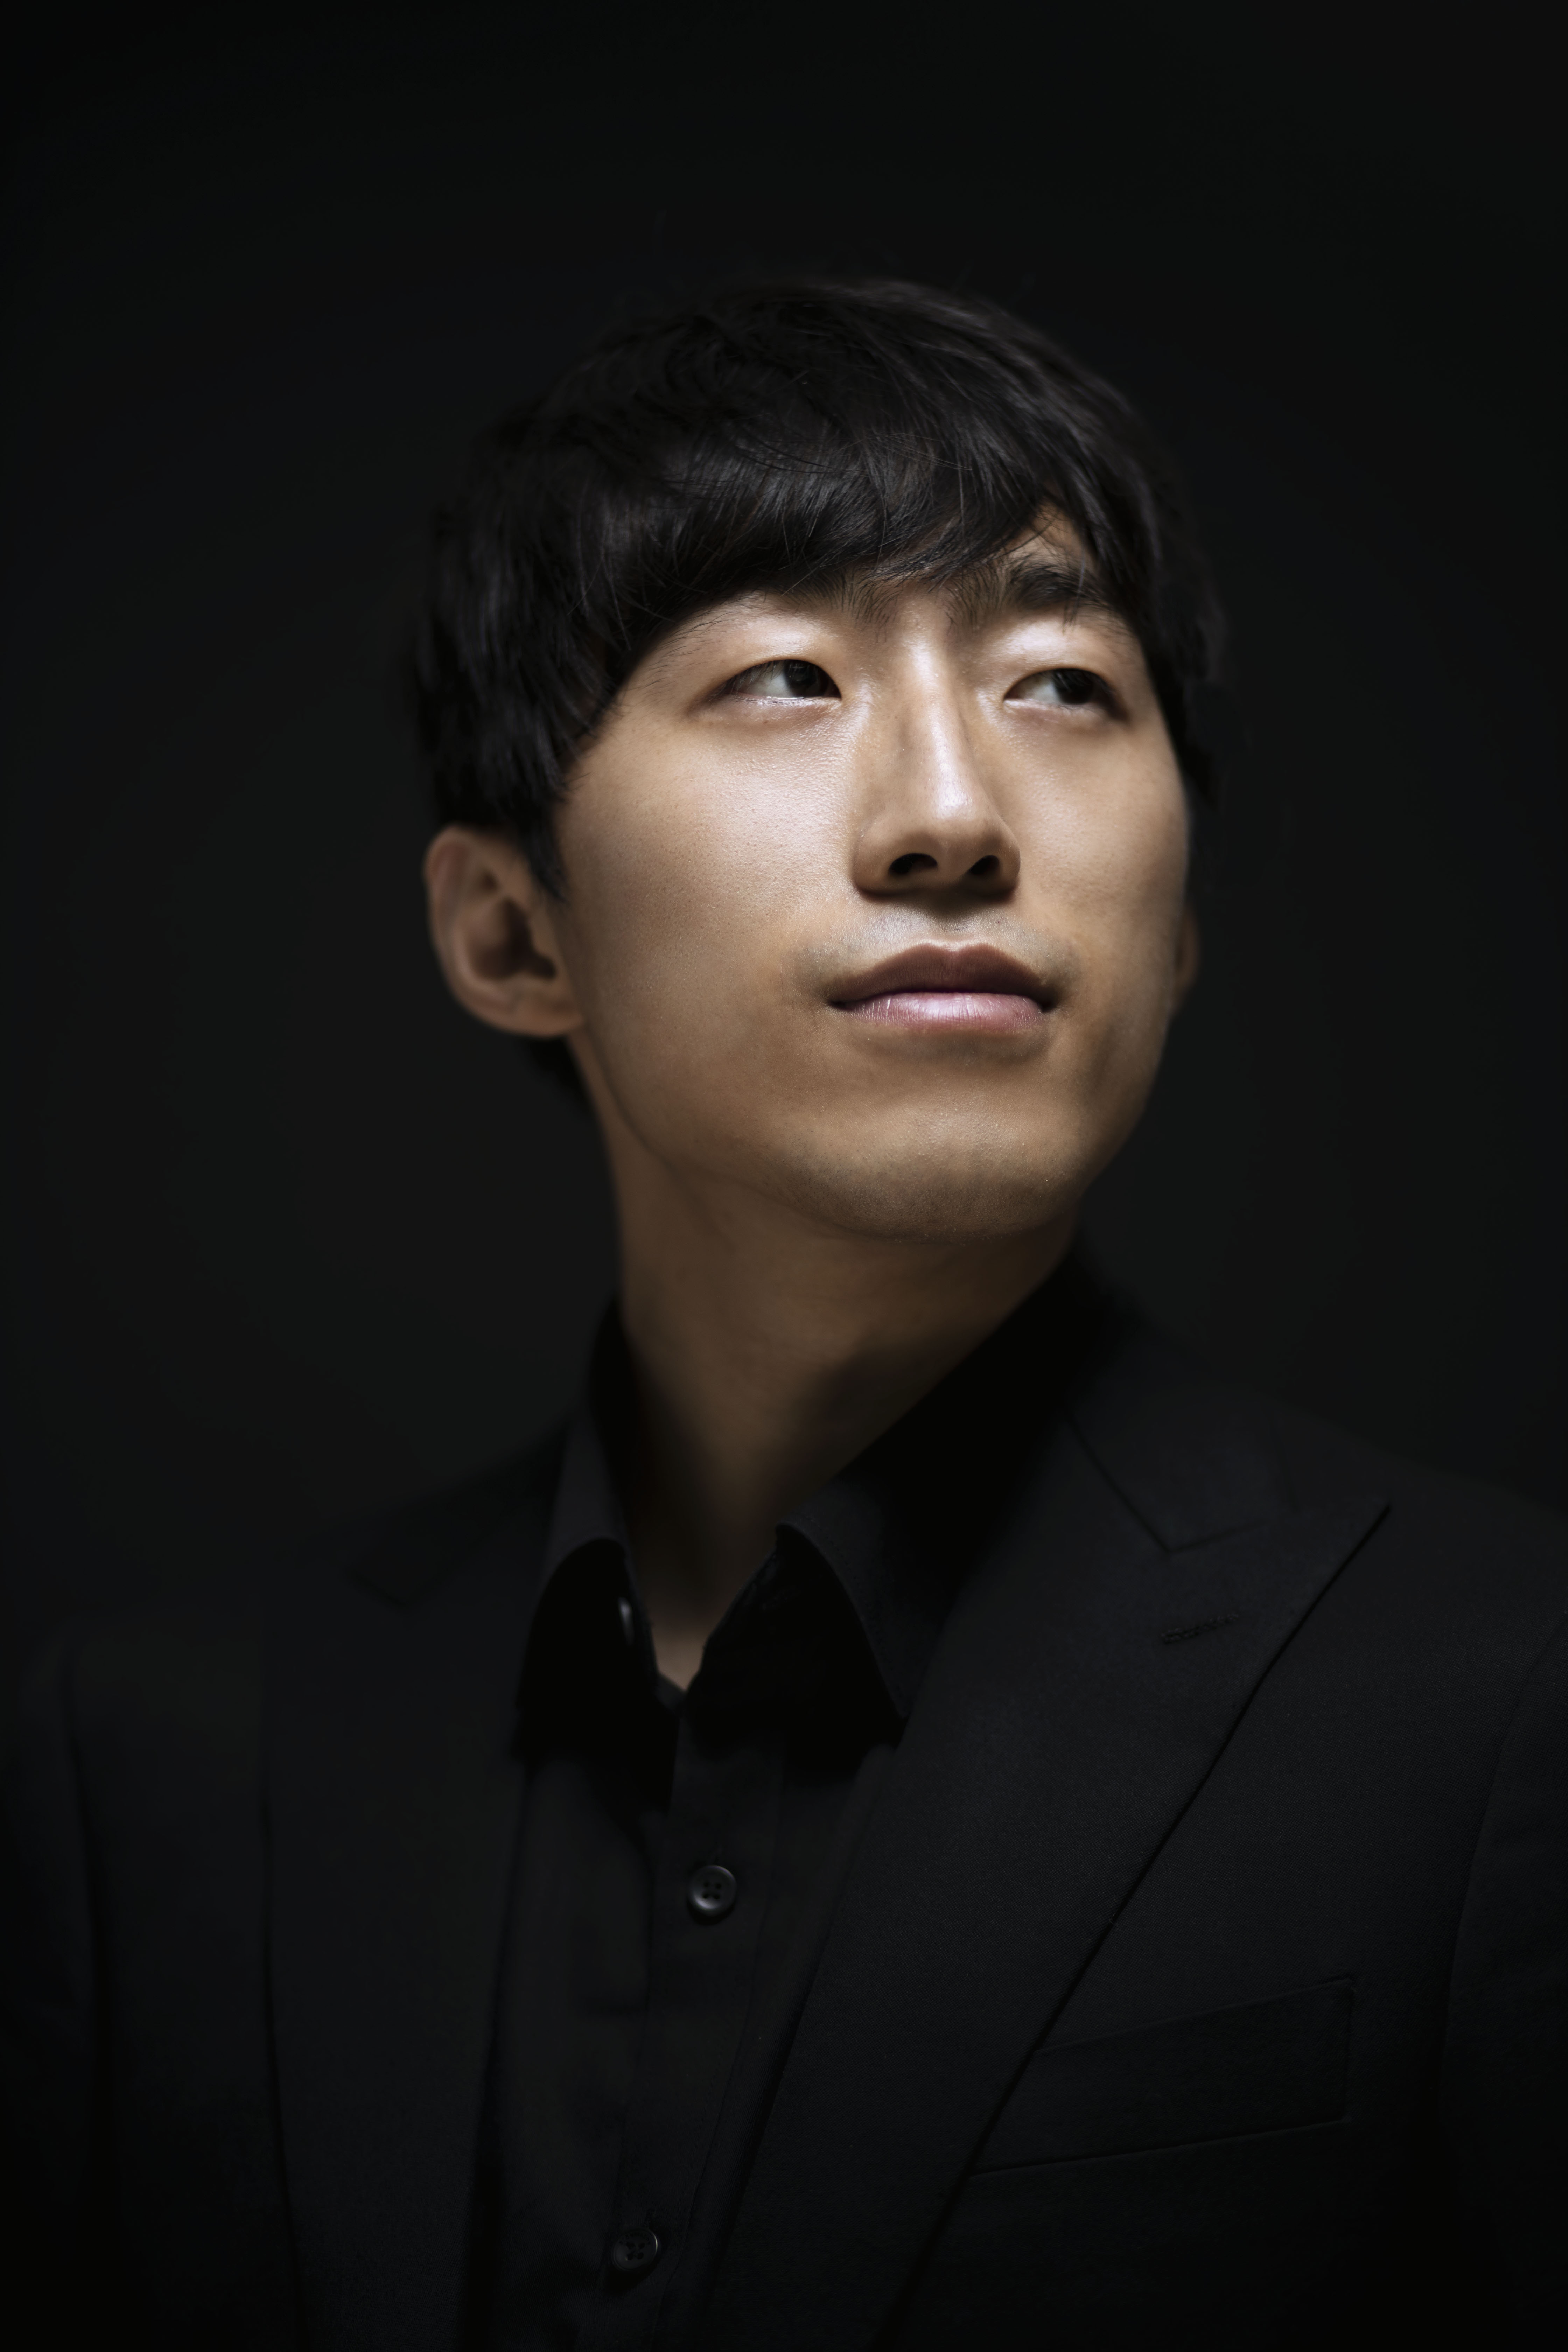 부소니 국제 피아노 콩쿠르에서 2위에 오른 피아니스트 김도현. 부소니 국제 피아노 콩쿠르 제공